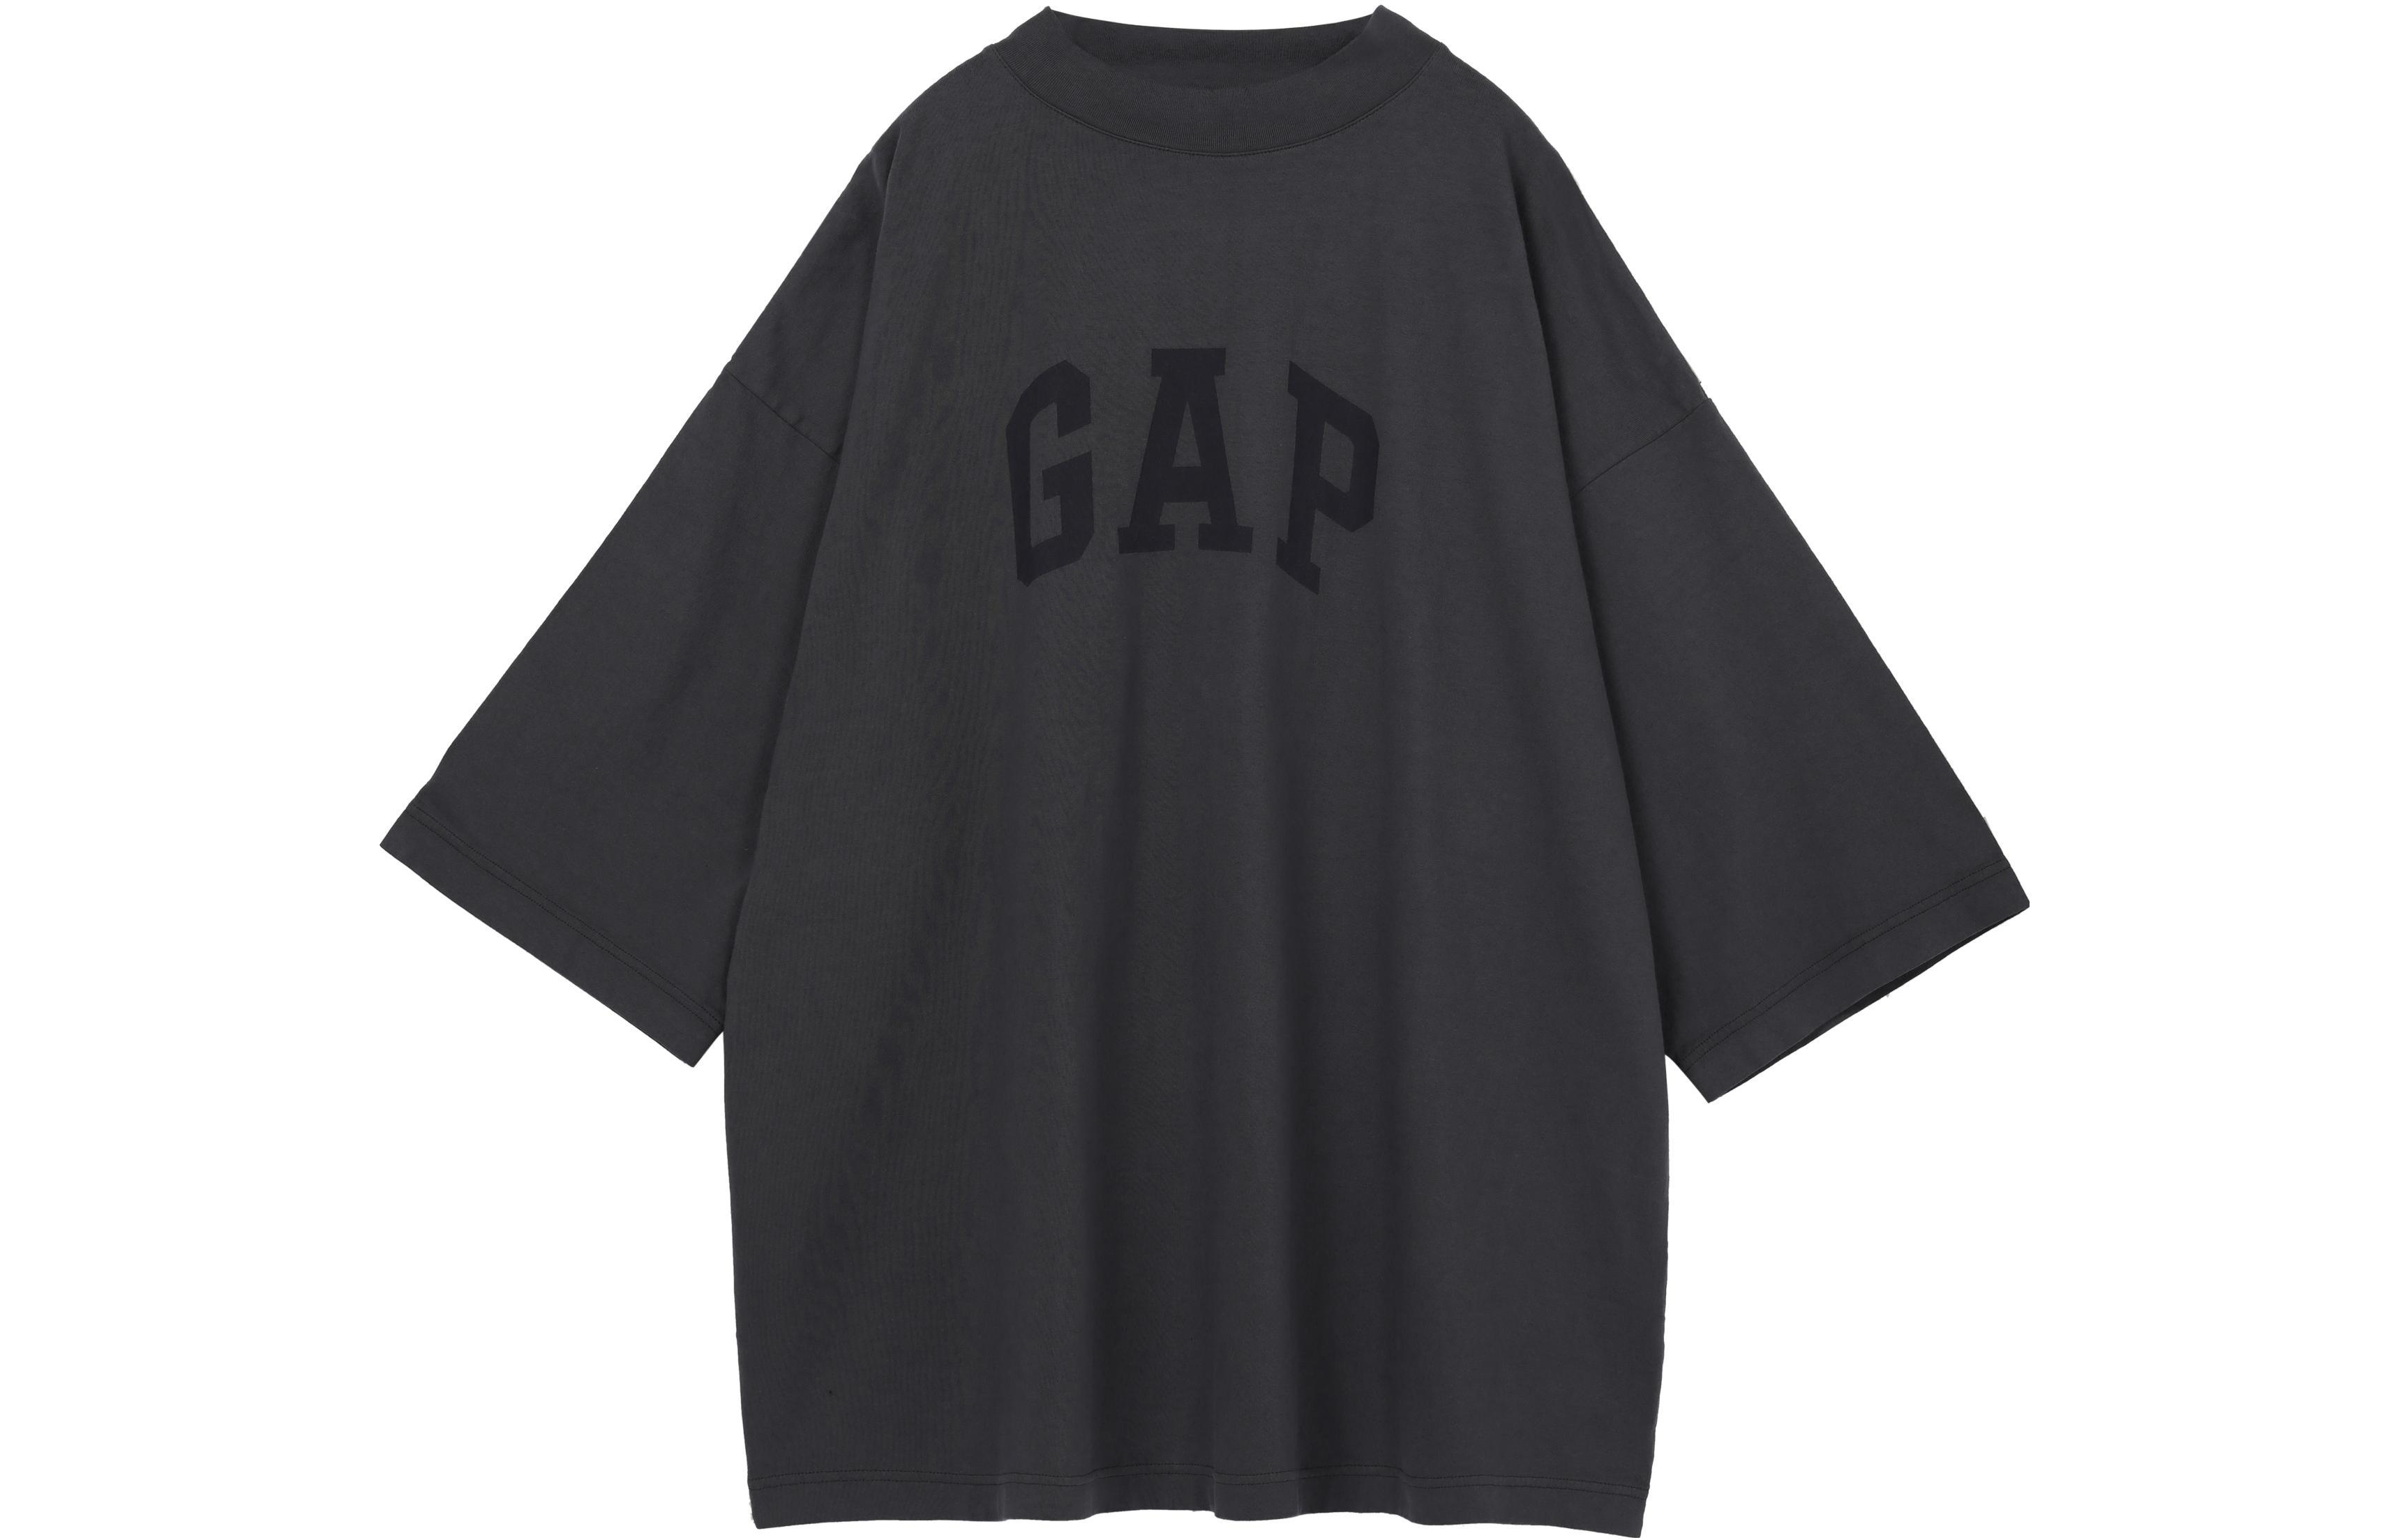 YEEZY x Gap x Balenciaga Dove 34 Sleeve Tee LogoT